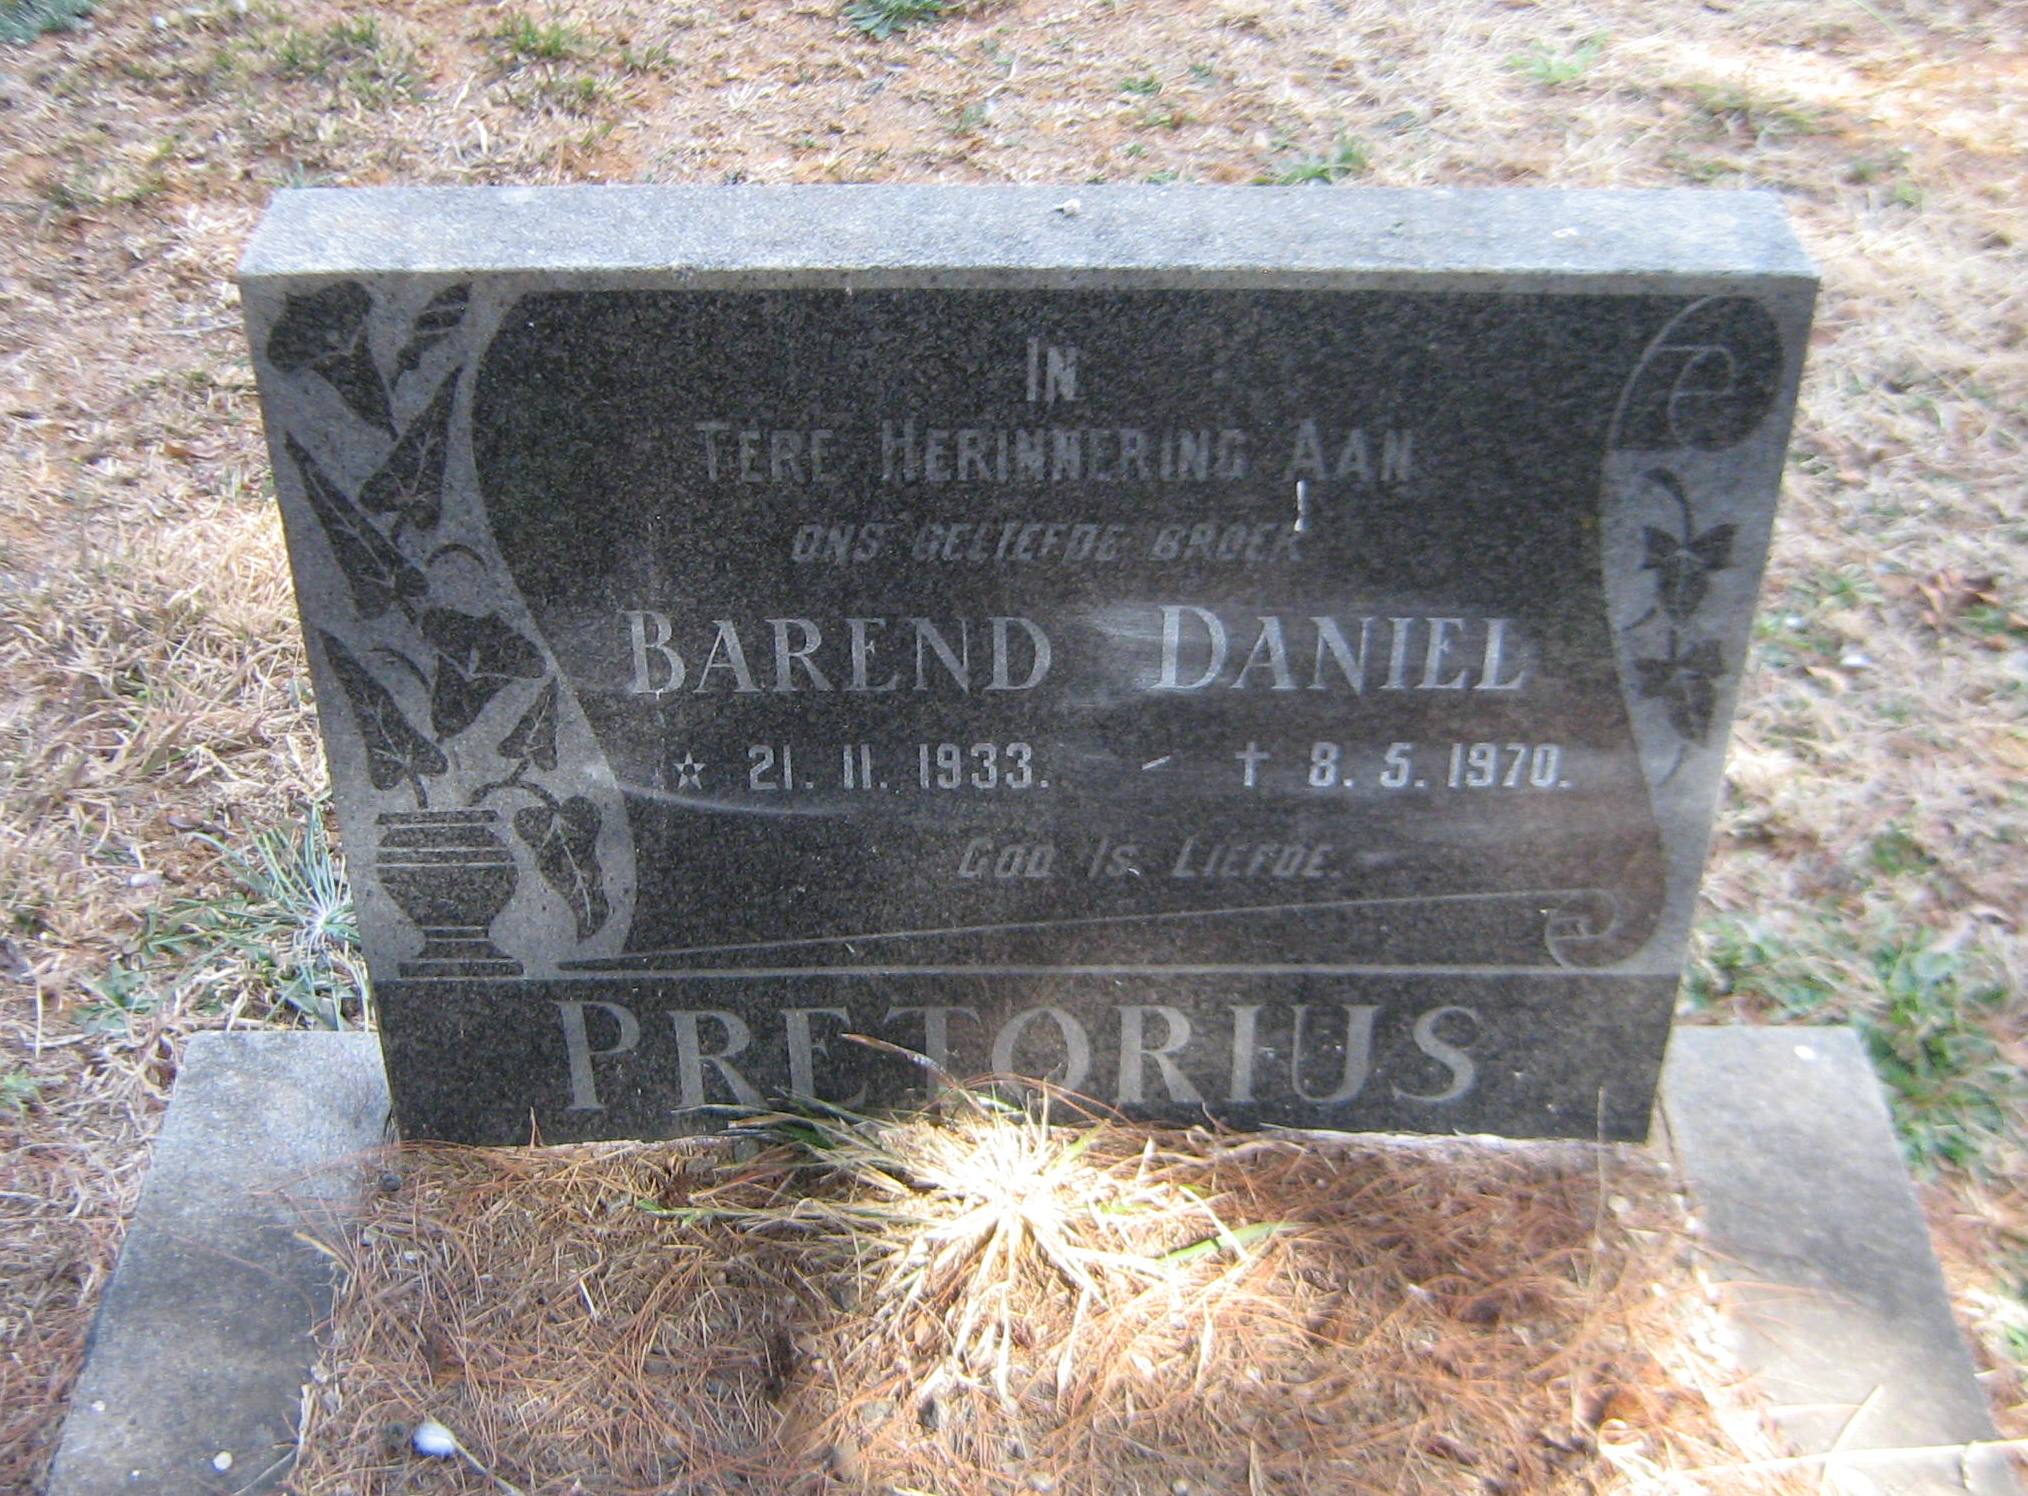 PRETORIUS Barend Daniel 1933-1970